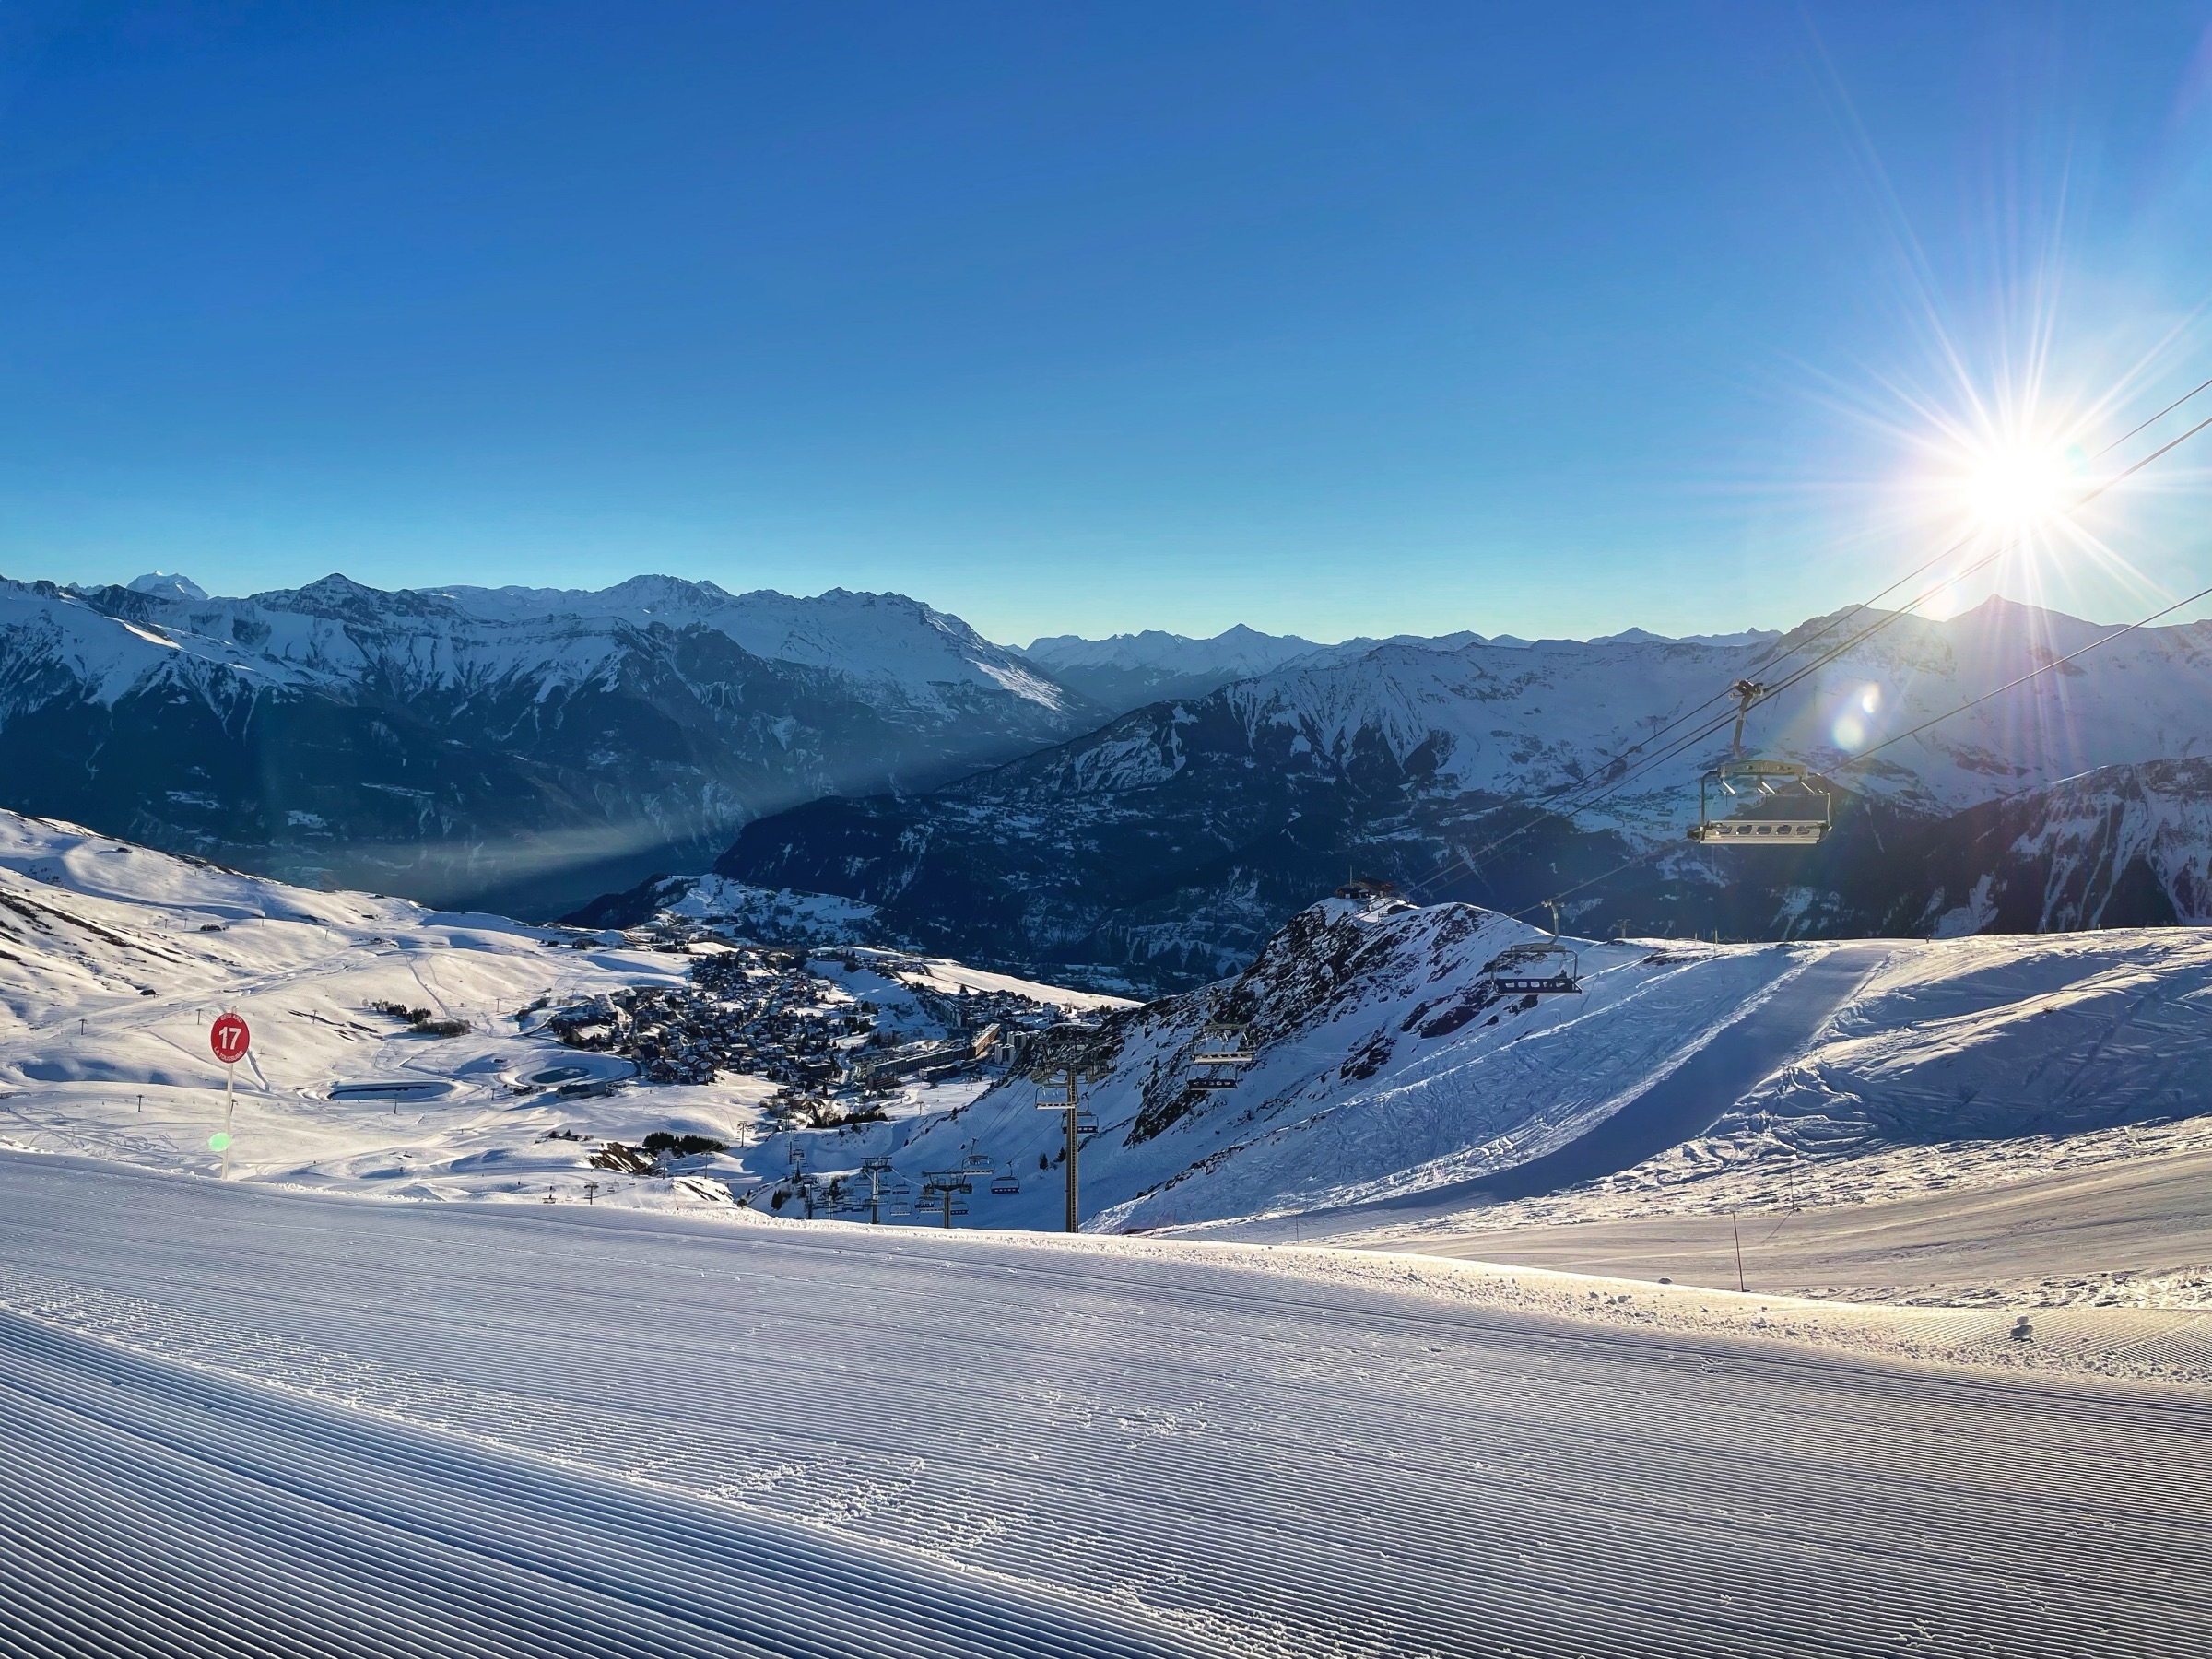 Foto genomen in de winter bij zonsopgang. Zicht vanaf Bellard op la Toussuire en de vallei van la Maurienne. We hebben op de voorgrond de sporen van de beroemden op de sneeuw met vervolgens een naar beneden gericht zicht op de wintersportplaats, nadien de bergen op de achtergrond. Een prachtige zon aan de rechterkant loutert de scene